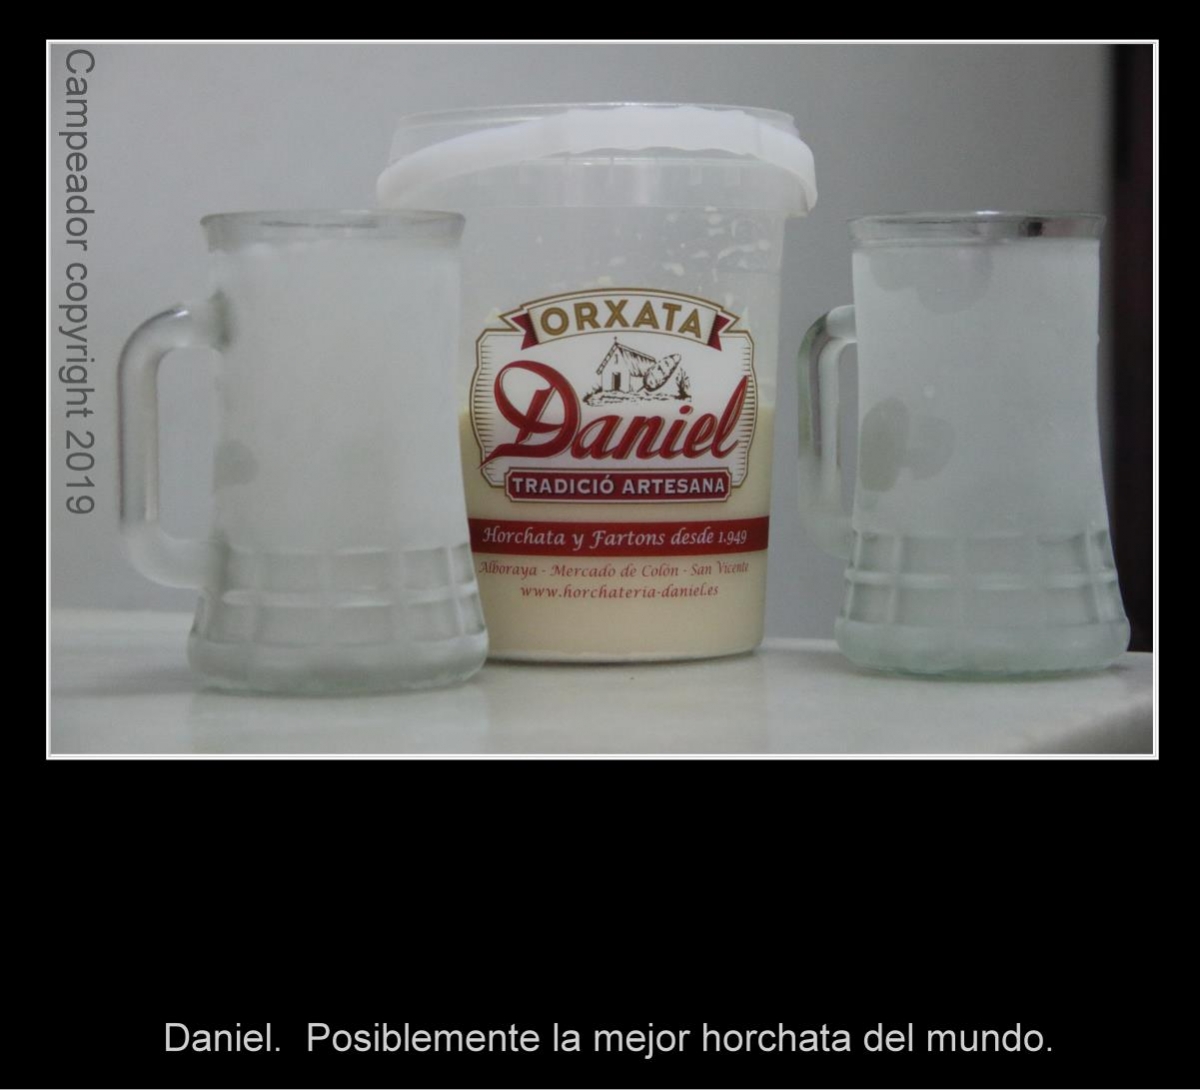 Daniel. Posiblemente la mejor horchata del mundo. Photography by Mario Cid (Campeador).